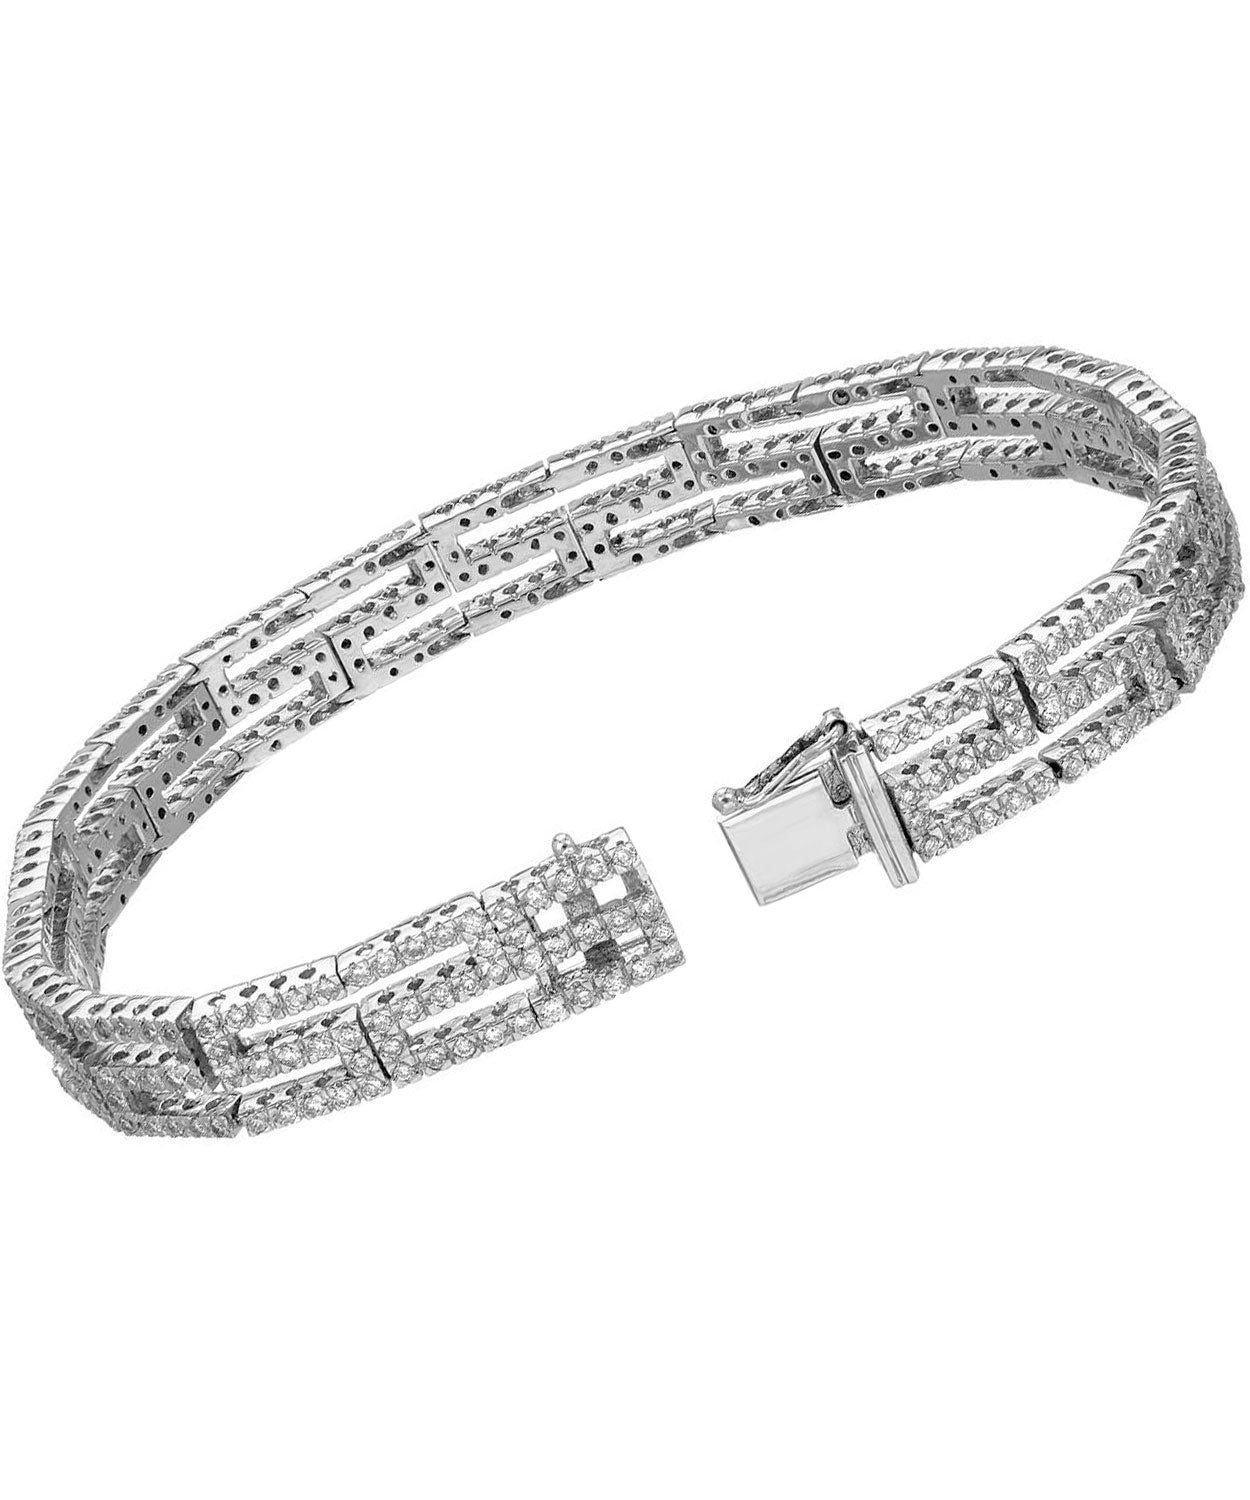 3.09 ctw Diamond 18k White Gold Fashion Link Bracelet View 2